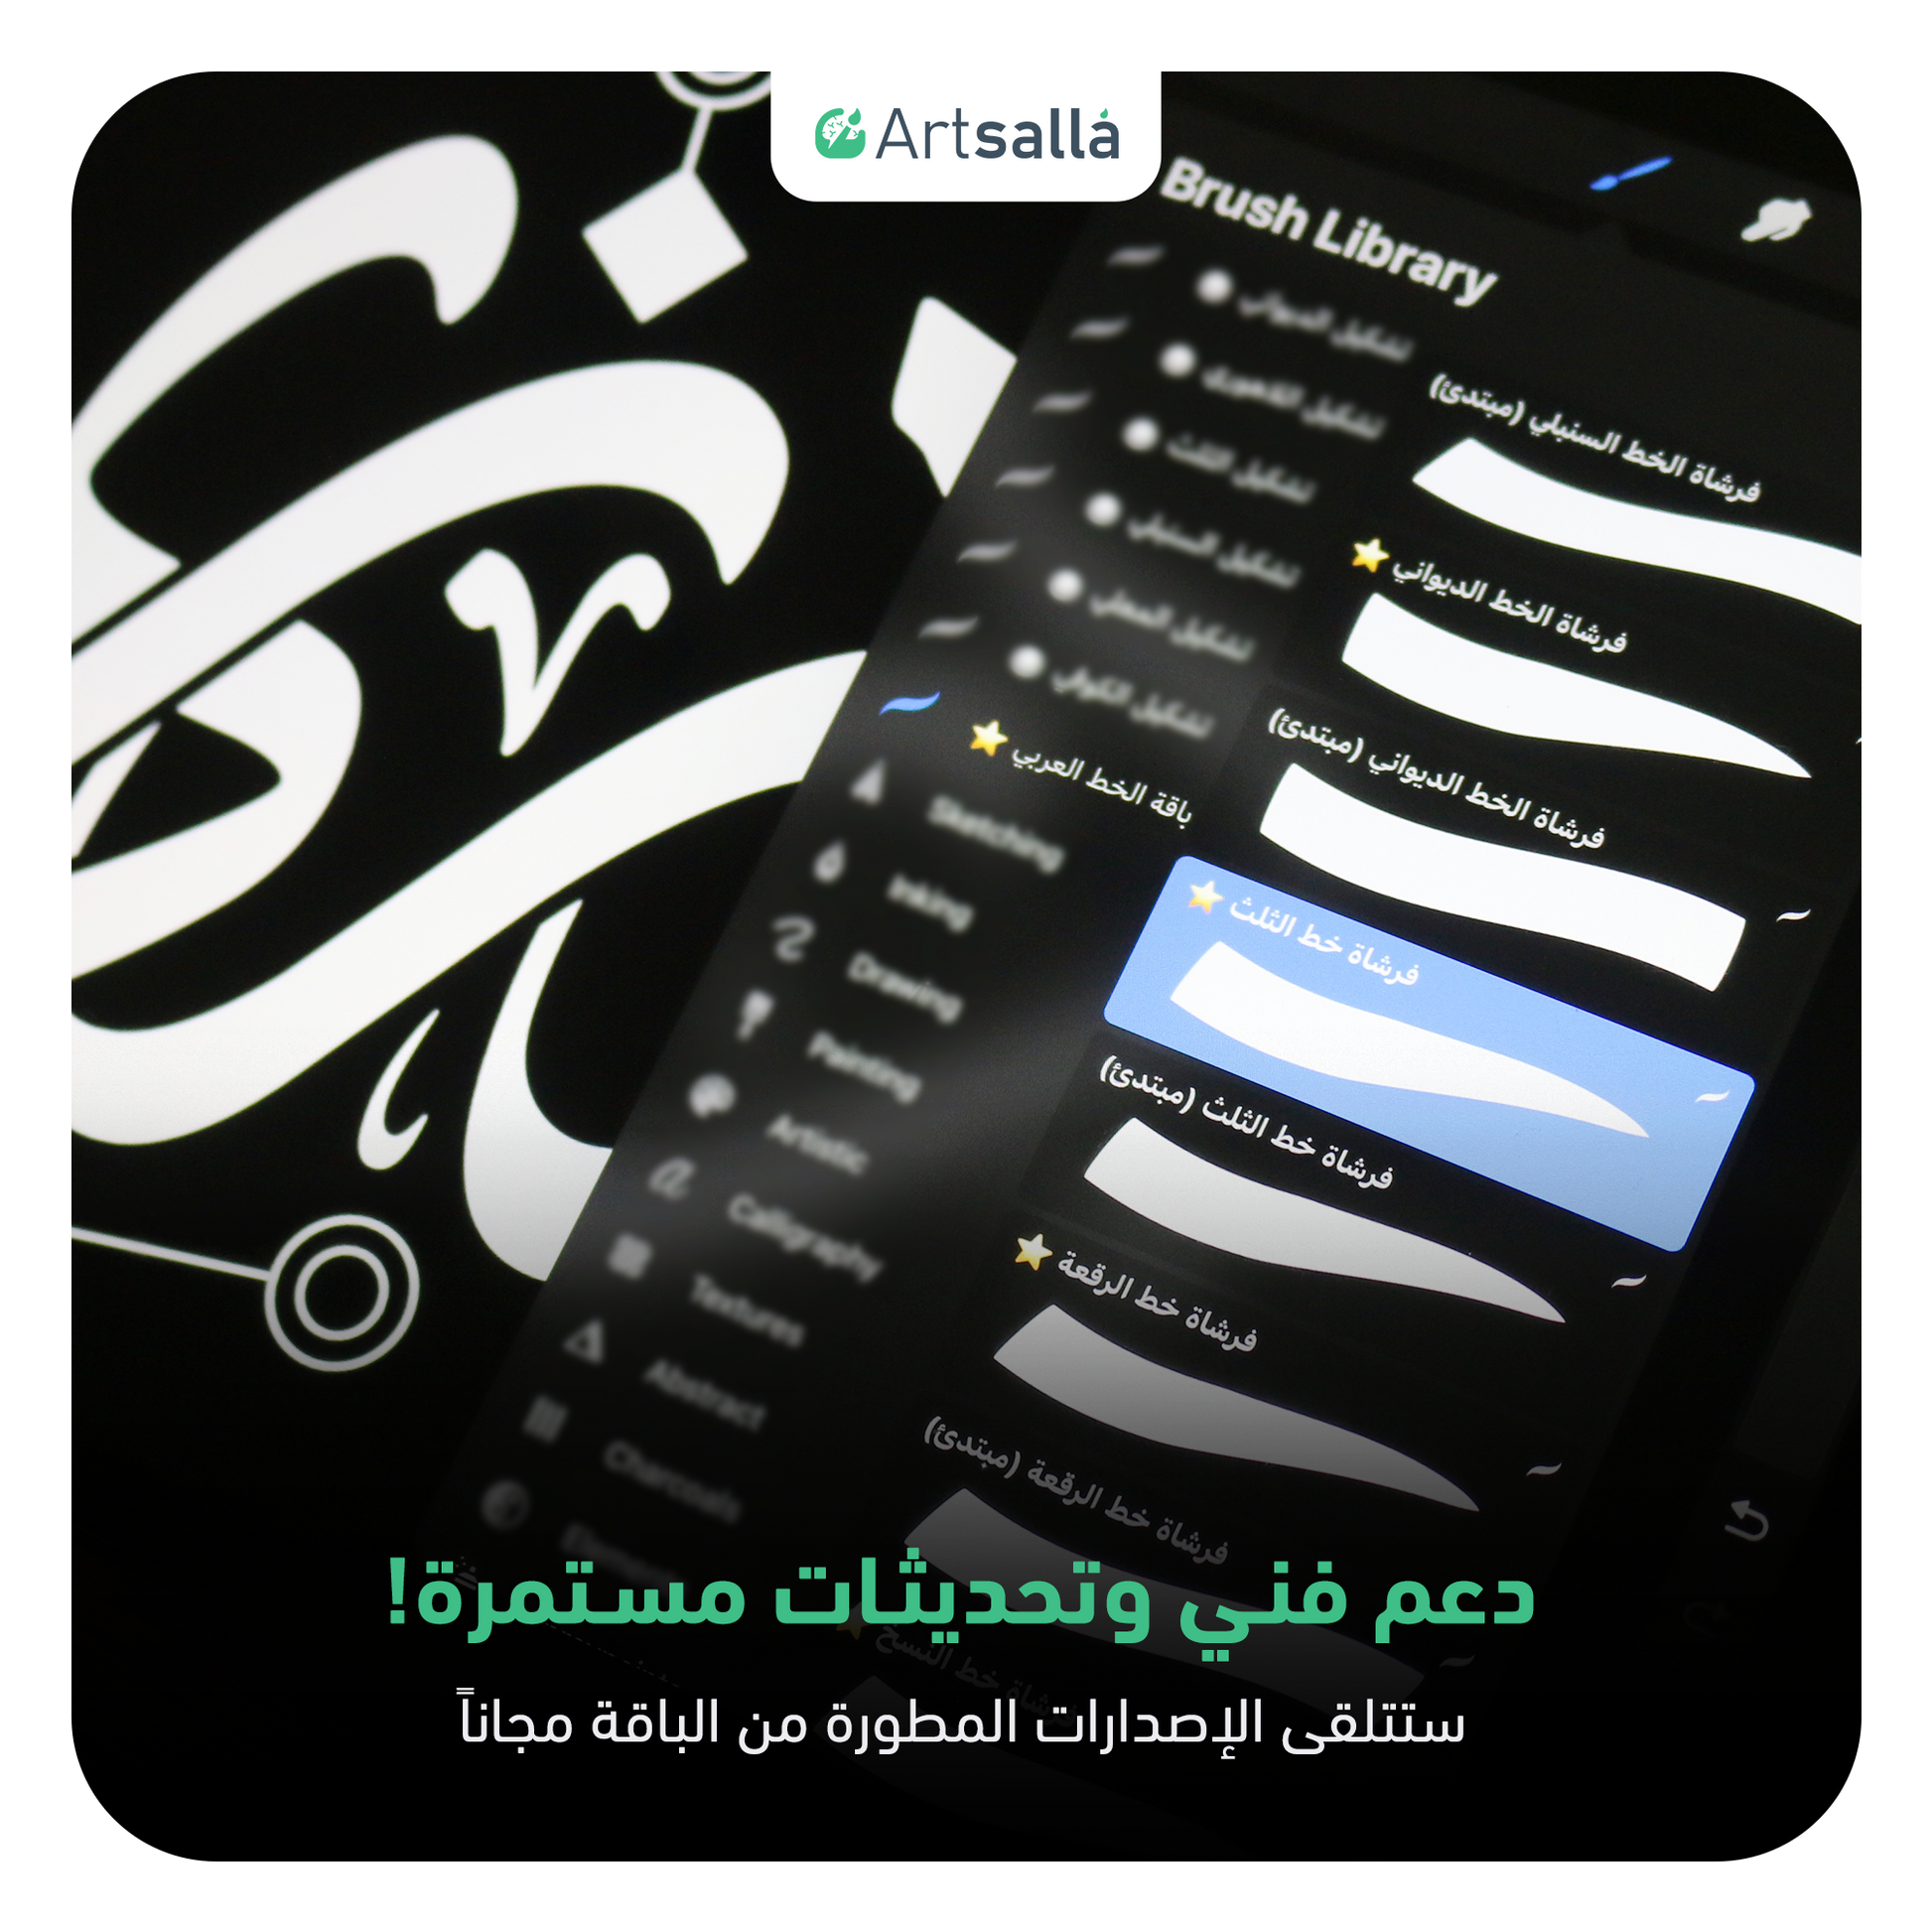 فرش الخط عربي تعمل على تطبيق بروكريت عبر الآيباد مقدمة من متجر آرت سلة